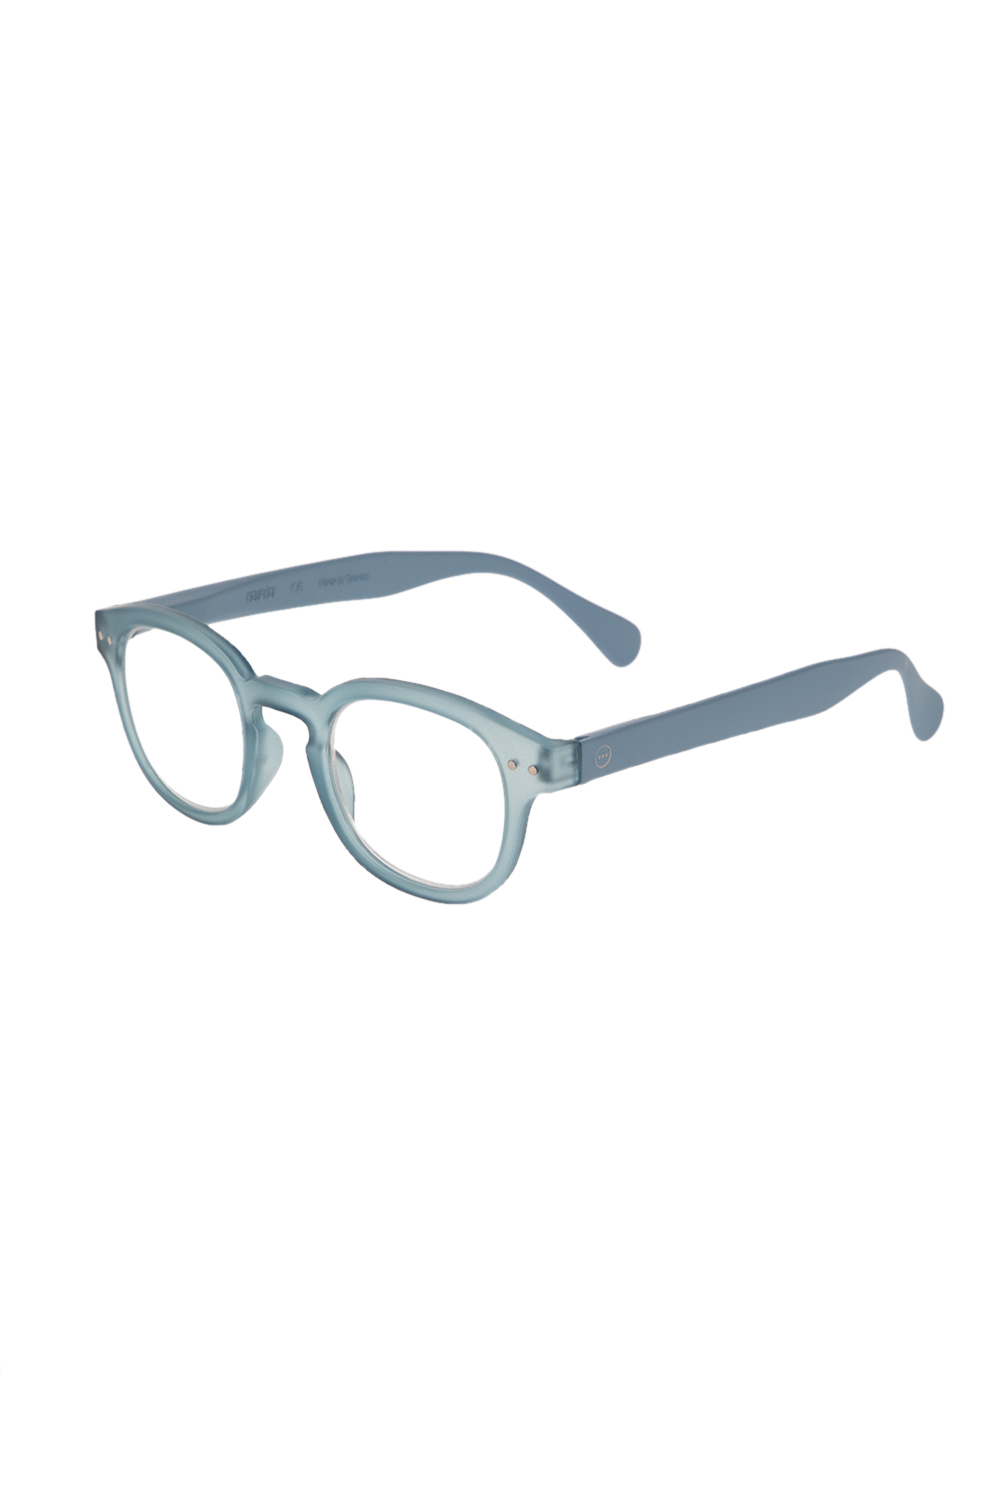 IZIPIZI – Unisex γυαλιά οράσεως IZIPIZI READING #C LIM/EDITION μπλε 1676836.0-0011